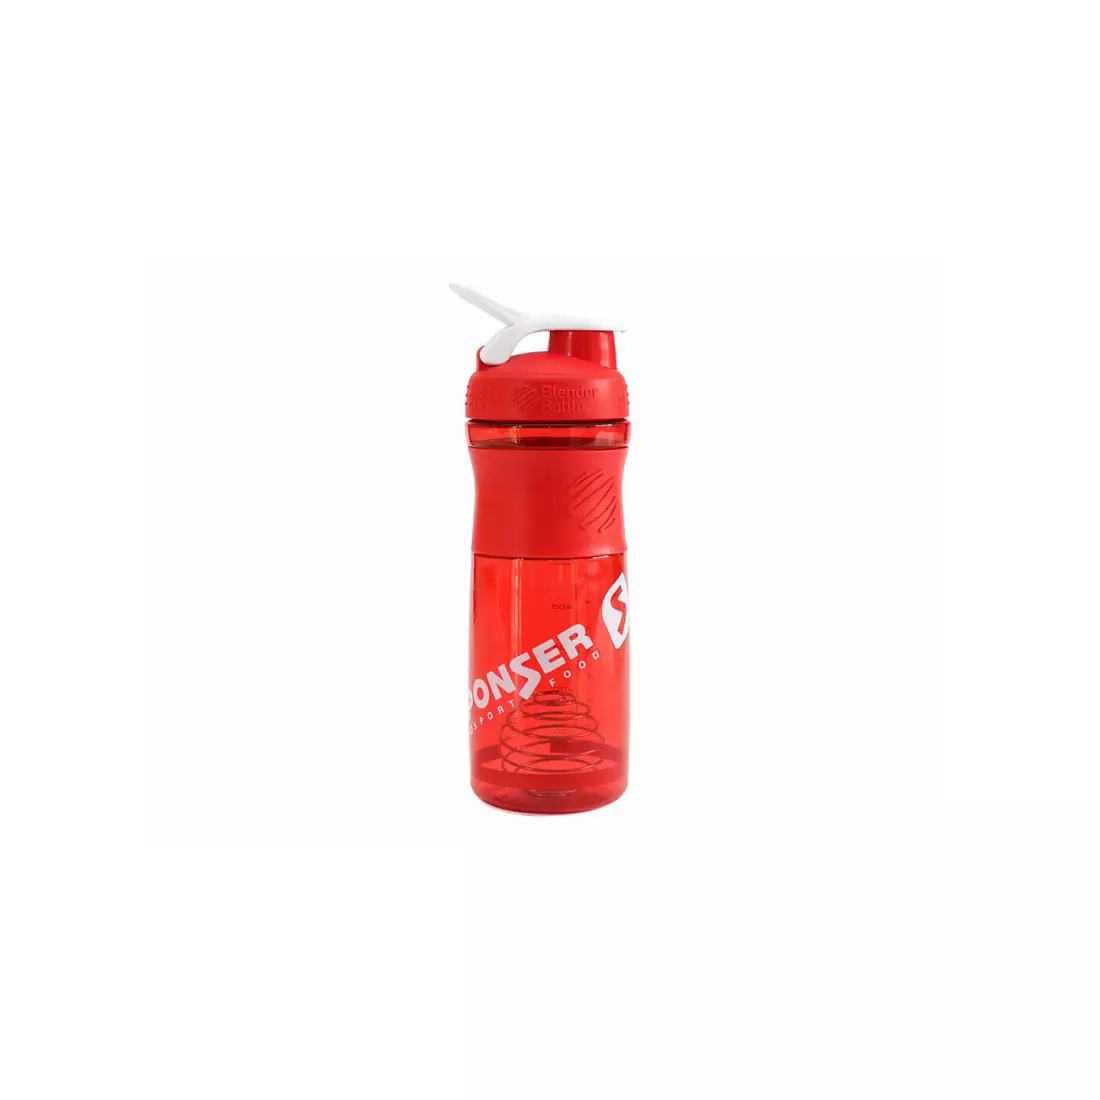 Shaker SPONSER SPORTMIXER BLENDER 828ml - red transparent